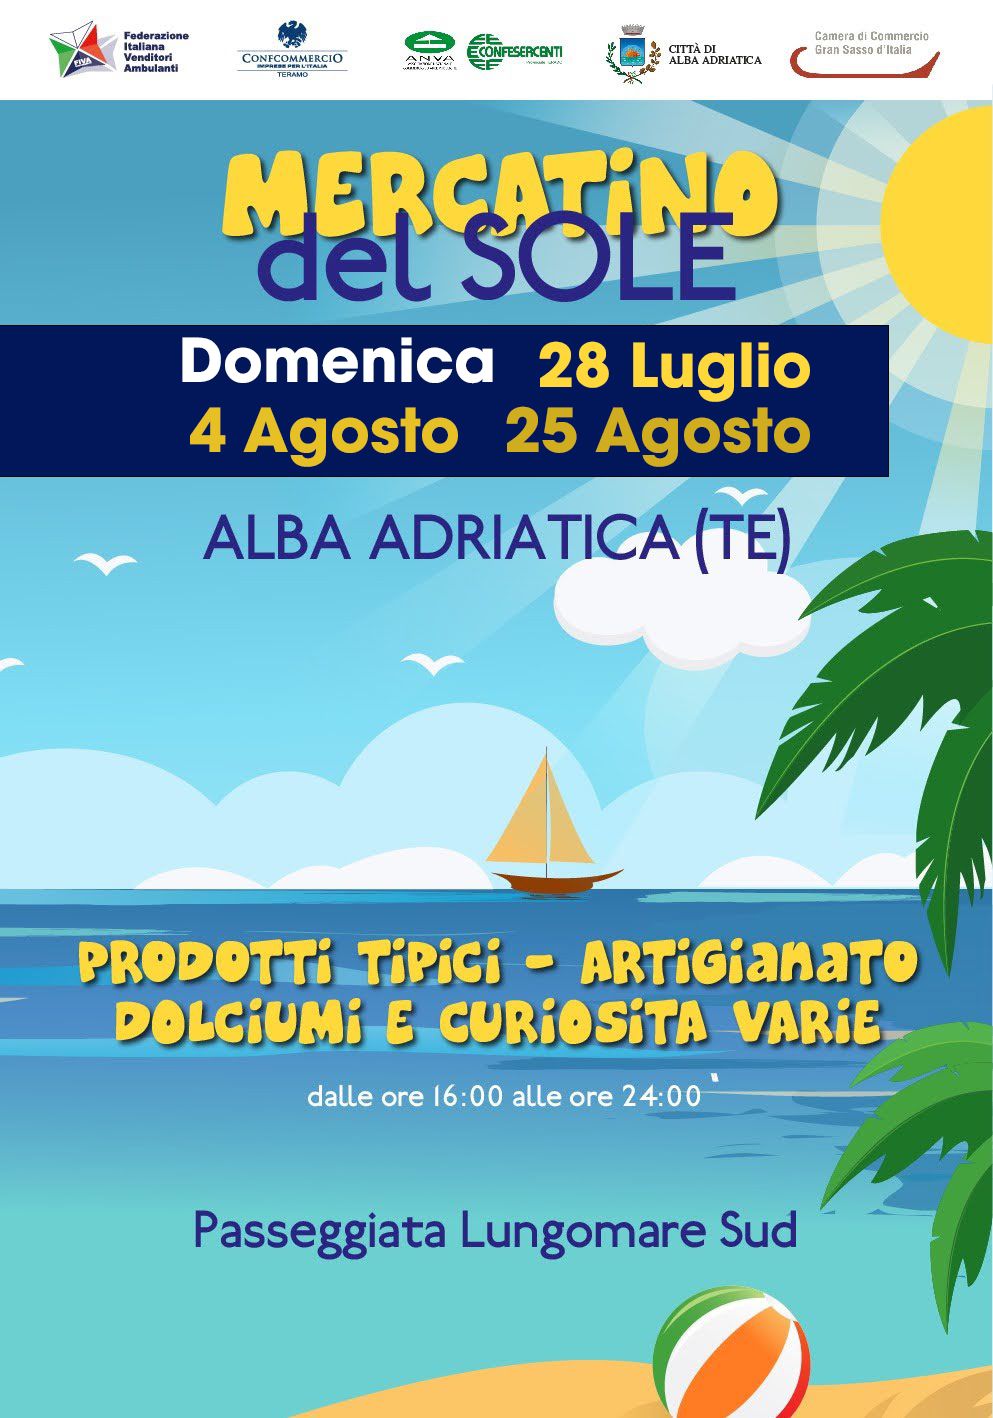 Mercatino del sole Alba Adriatica 28 luglio – 4 agosto – 25 agosto